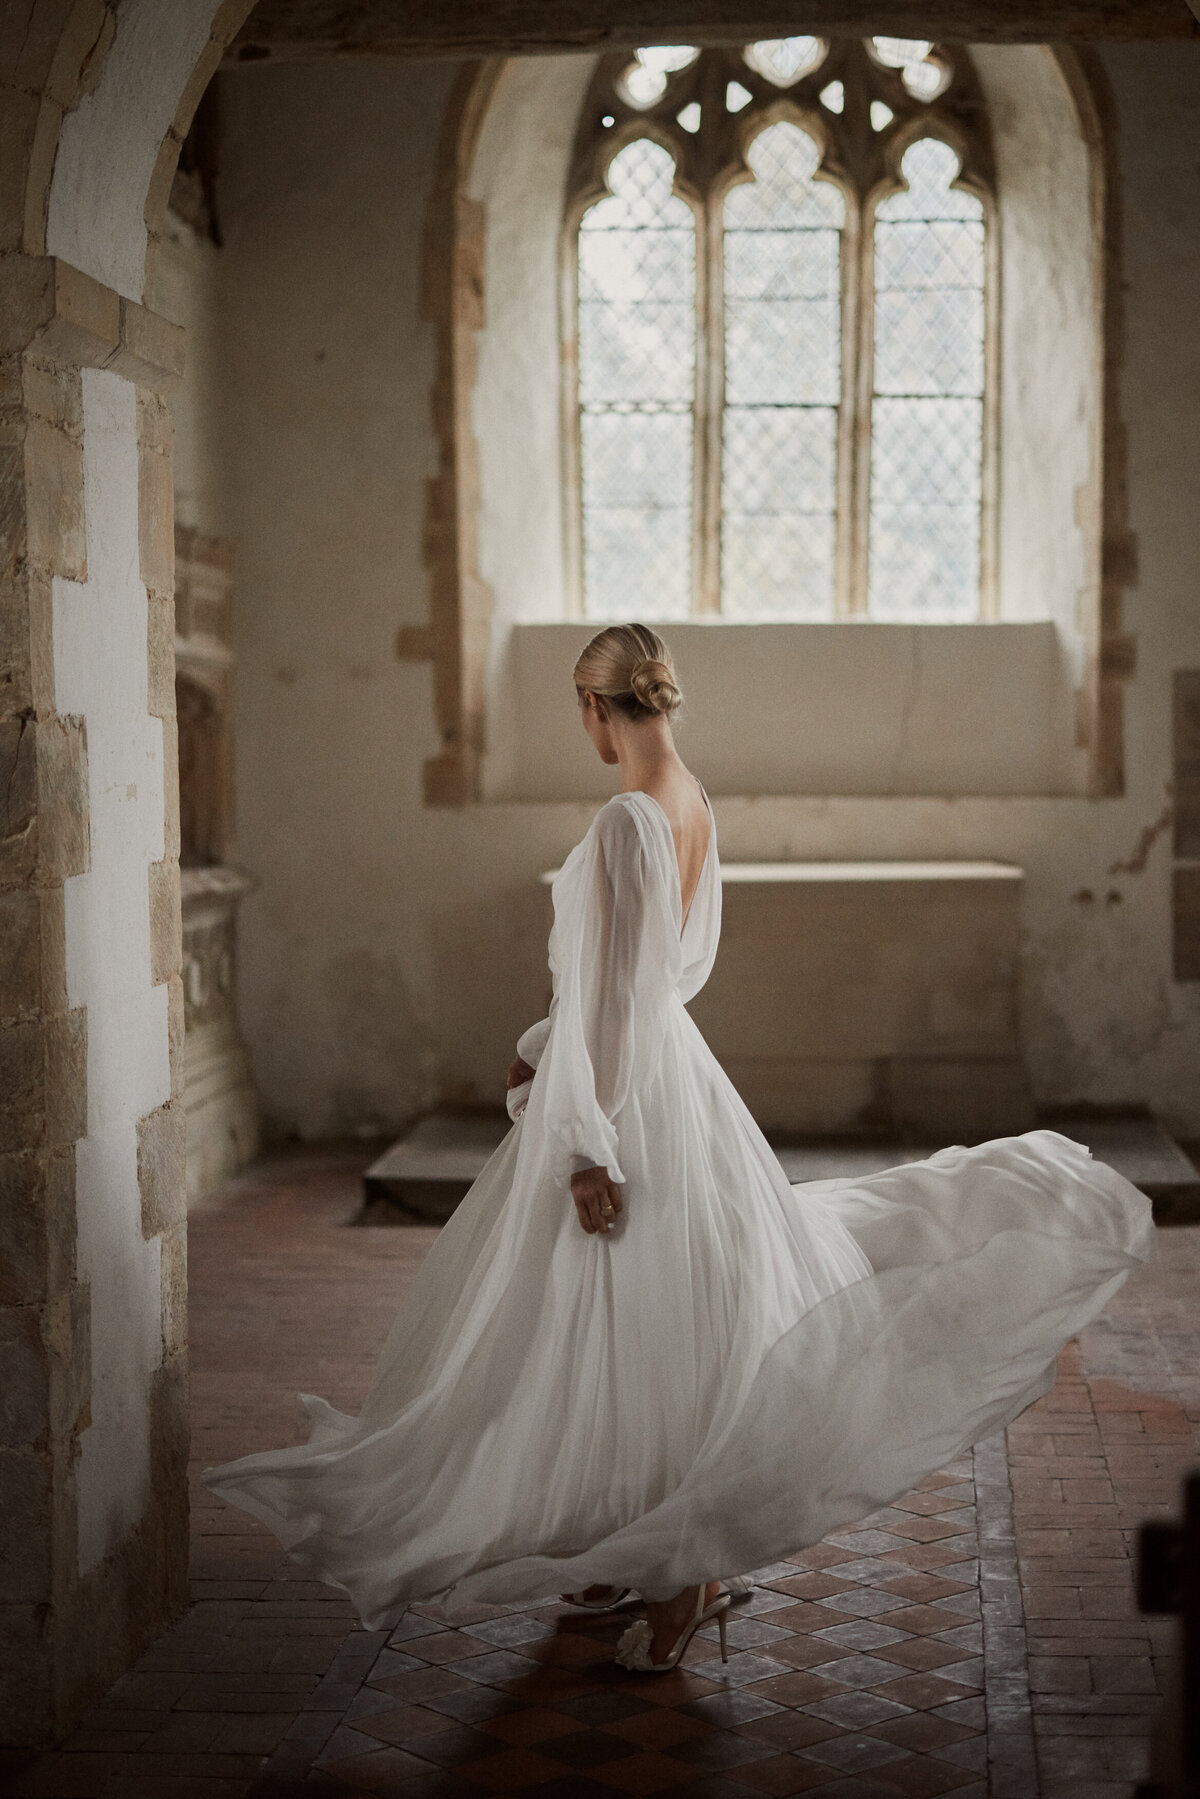 Flowing wedding dress in silk by British designer